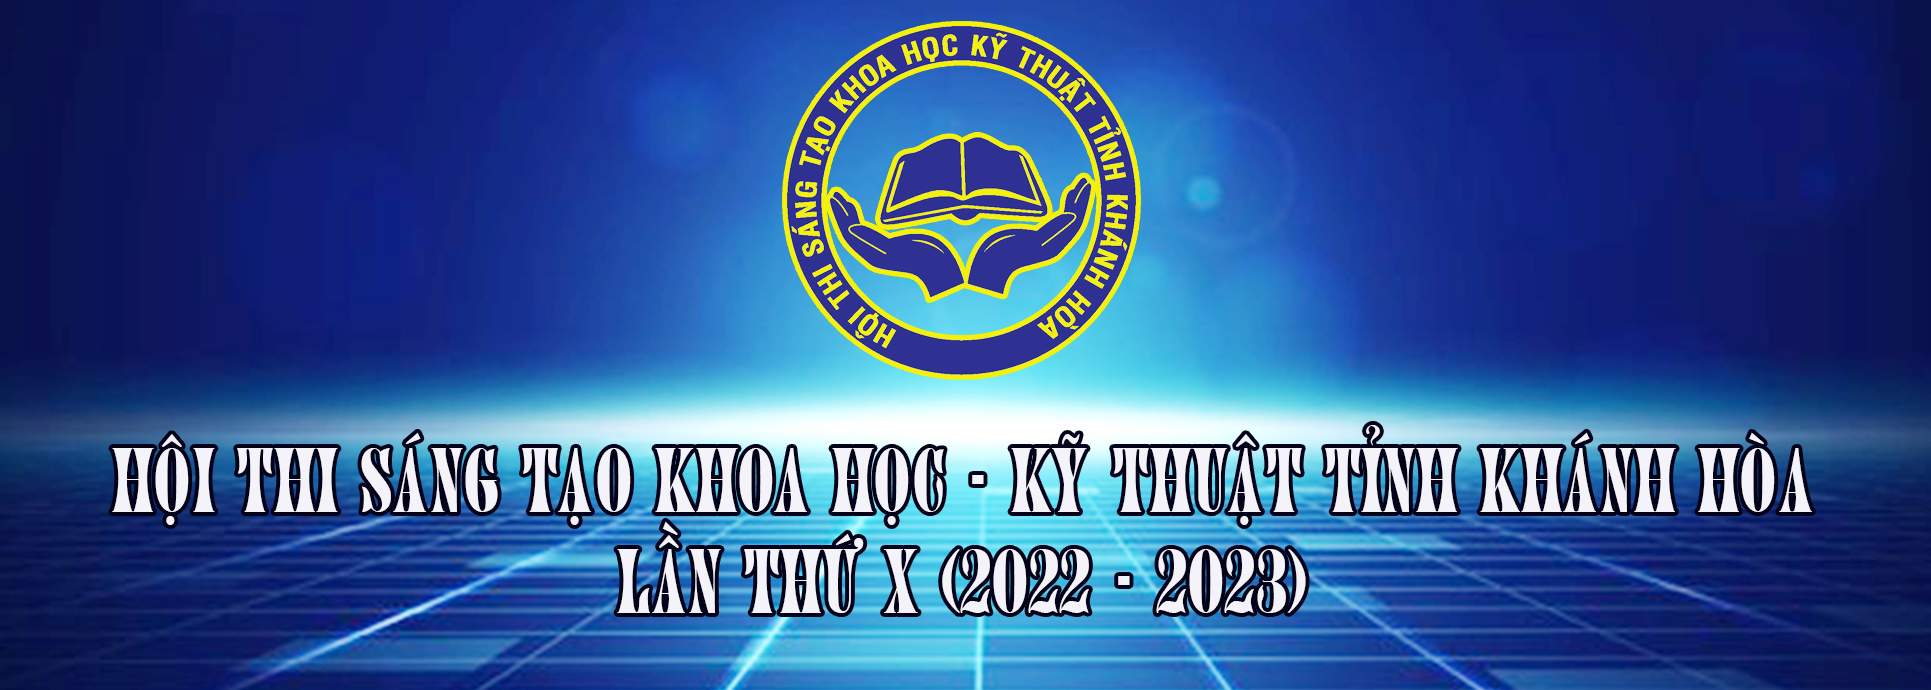 Hội thi Sáng tạo khoa học kỹ thuật tỉnh Khánh Hòa lần thứ X (2022-2023)